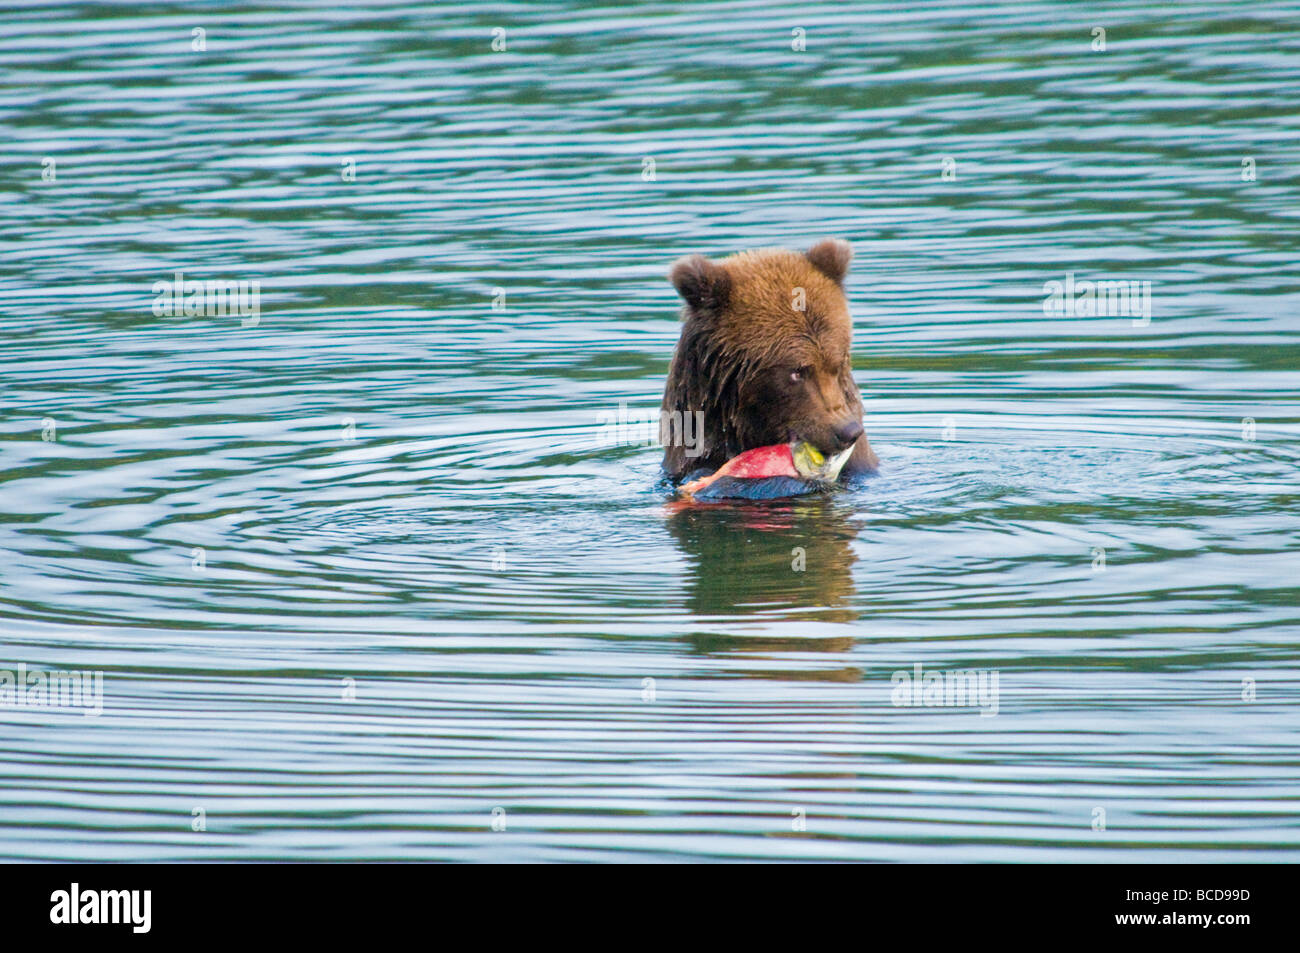 Grizzly Bear eating salmon, Ursus arctos horriblis, Brooks River, Katmai National Park, Alaska, USA Stock Photo